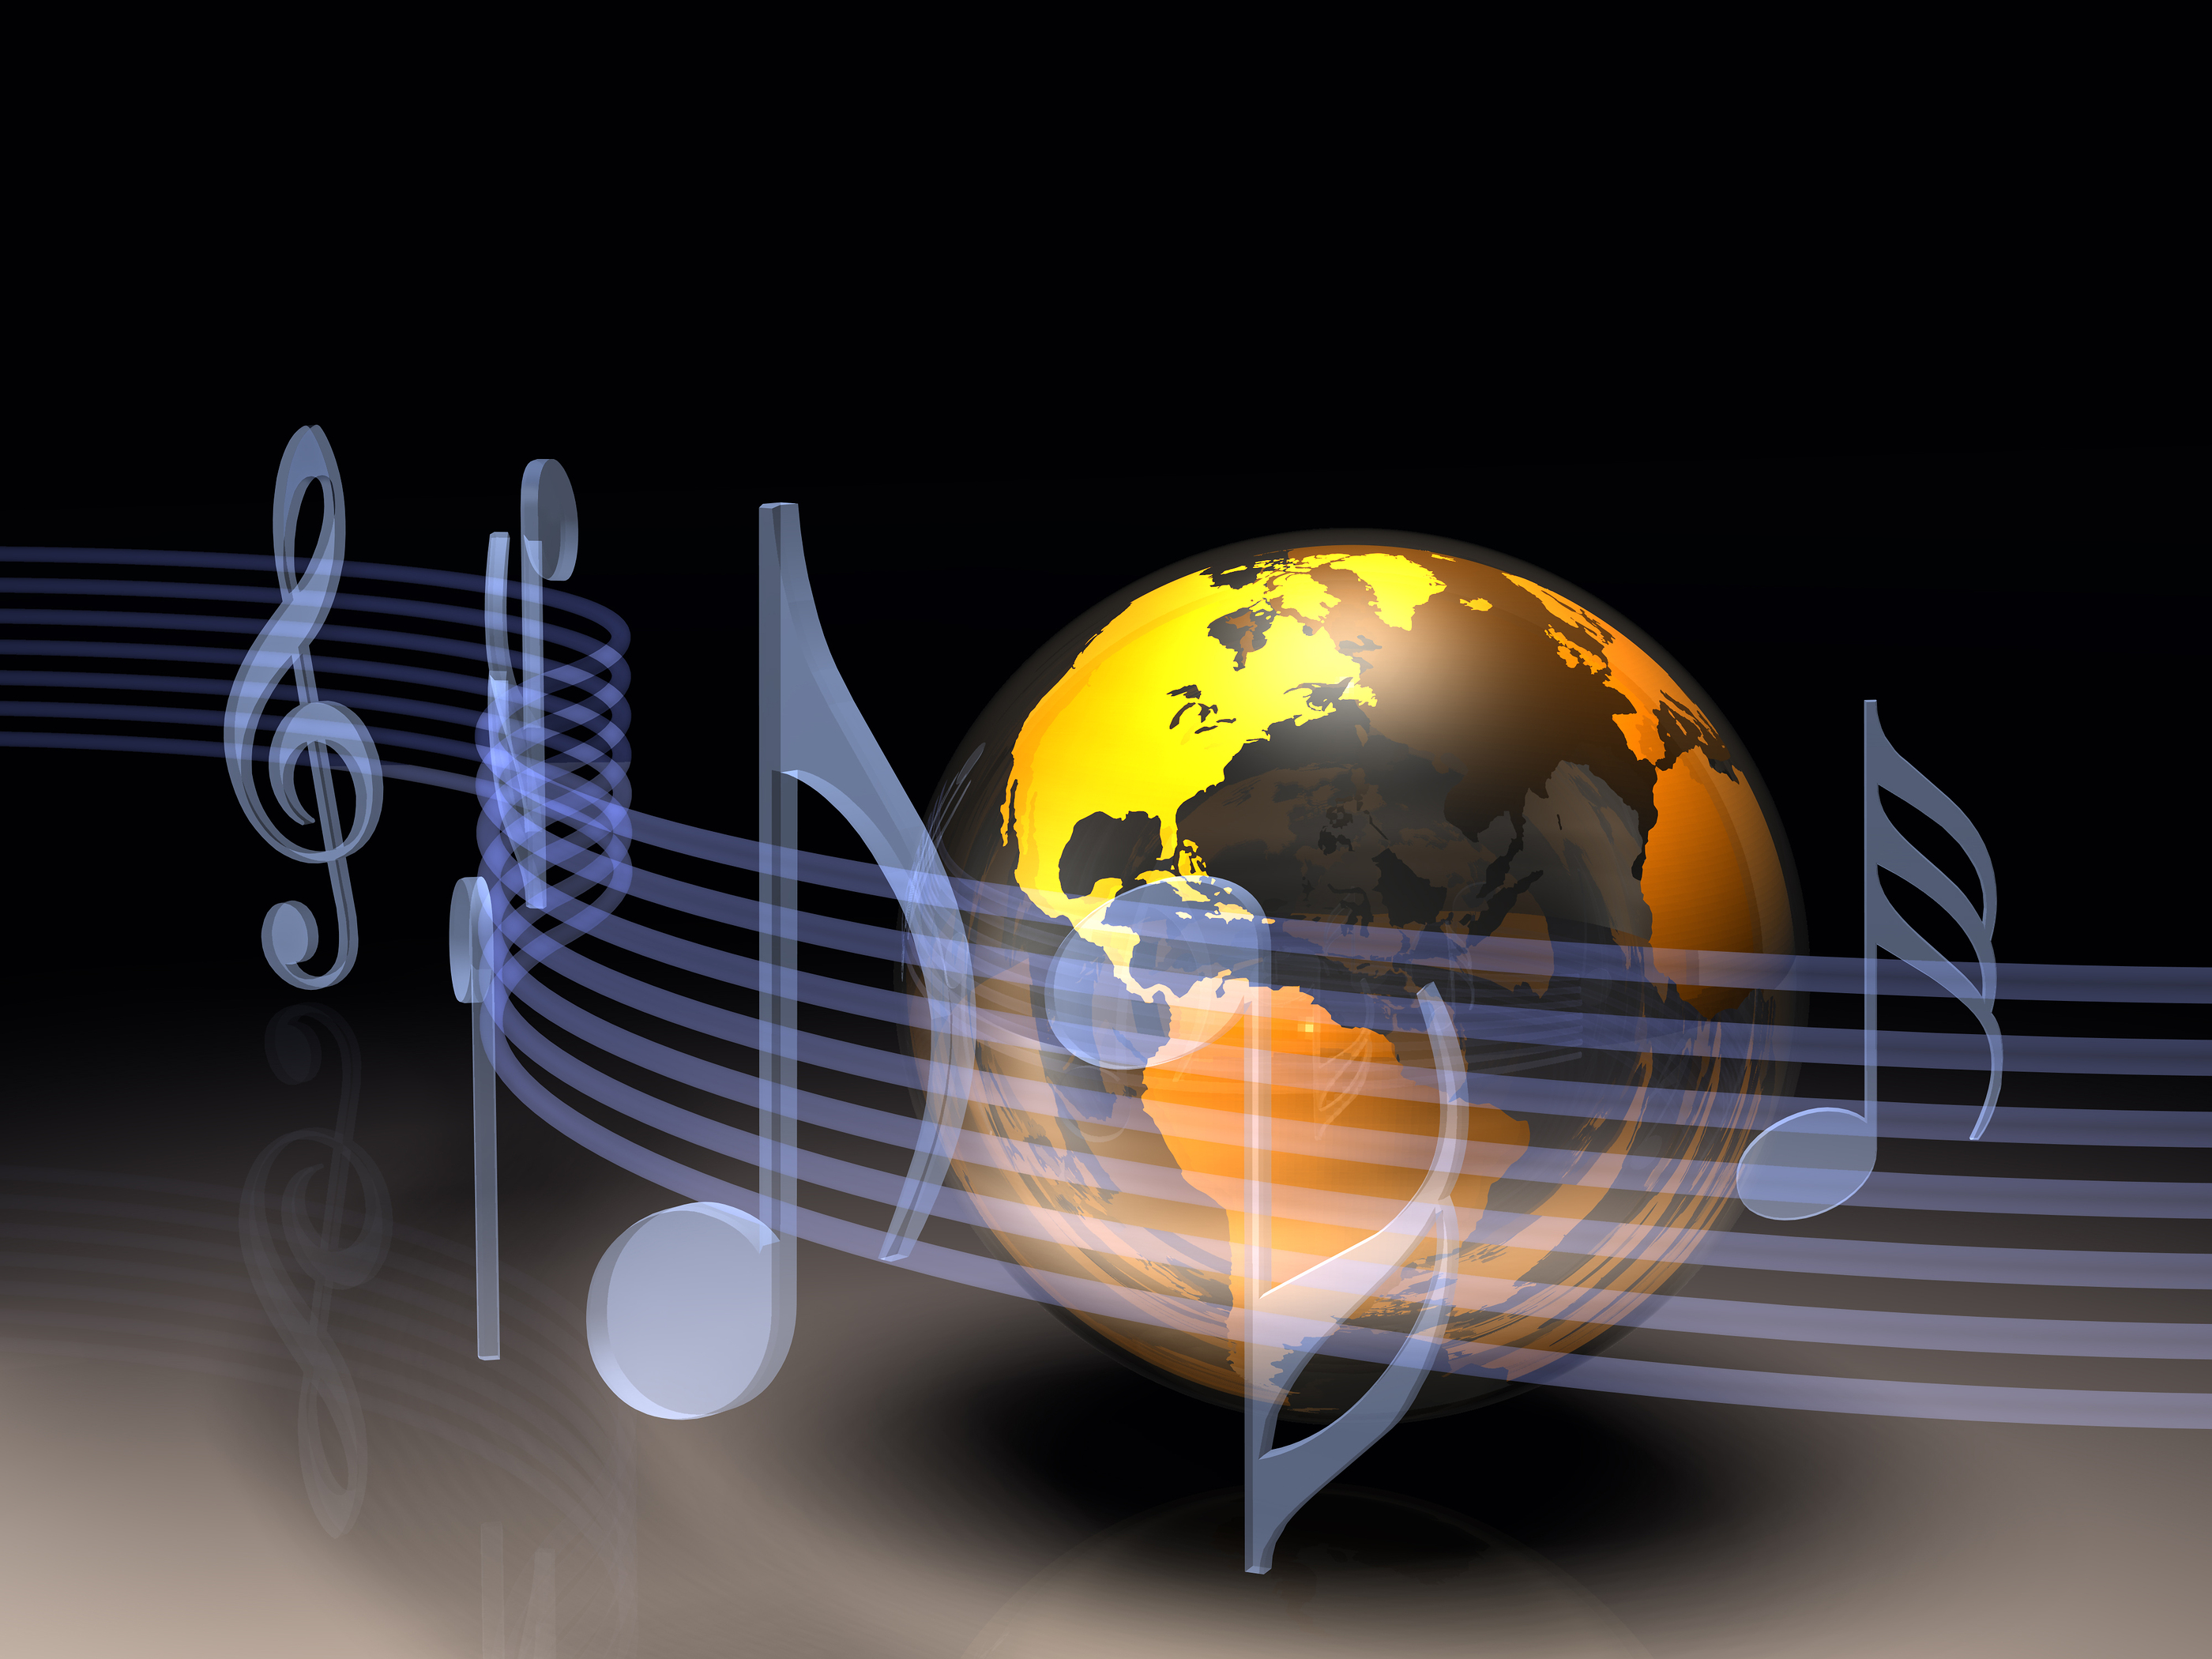 Войдем в мир музыки. Музыкальная Планета. Музыкальный мир. Музыкальный земной шар. Путешествие в мир музыки.